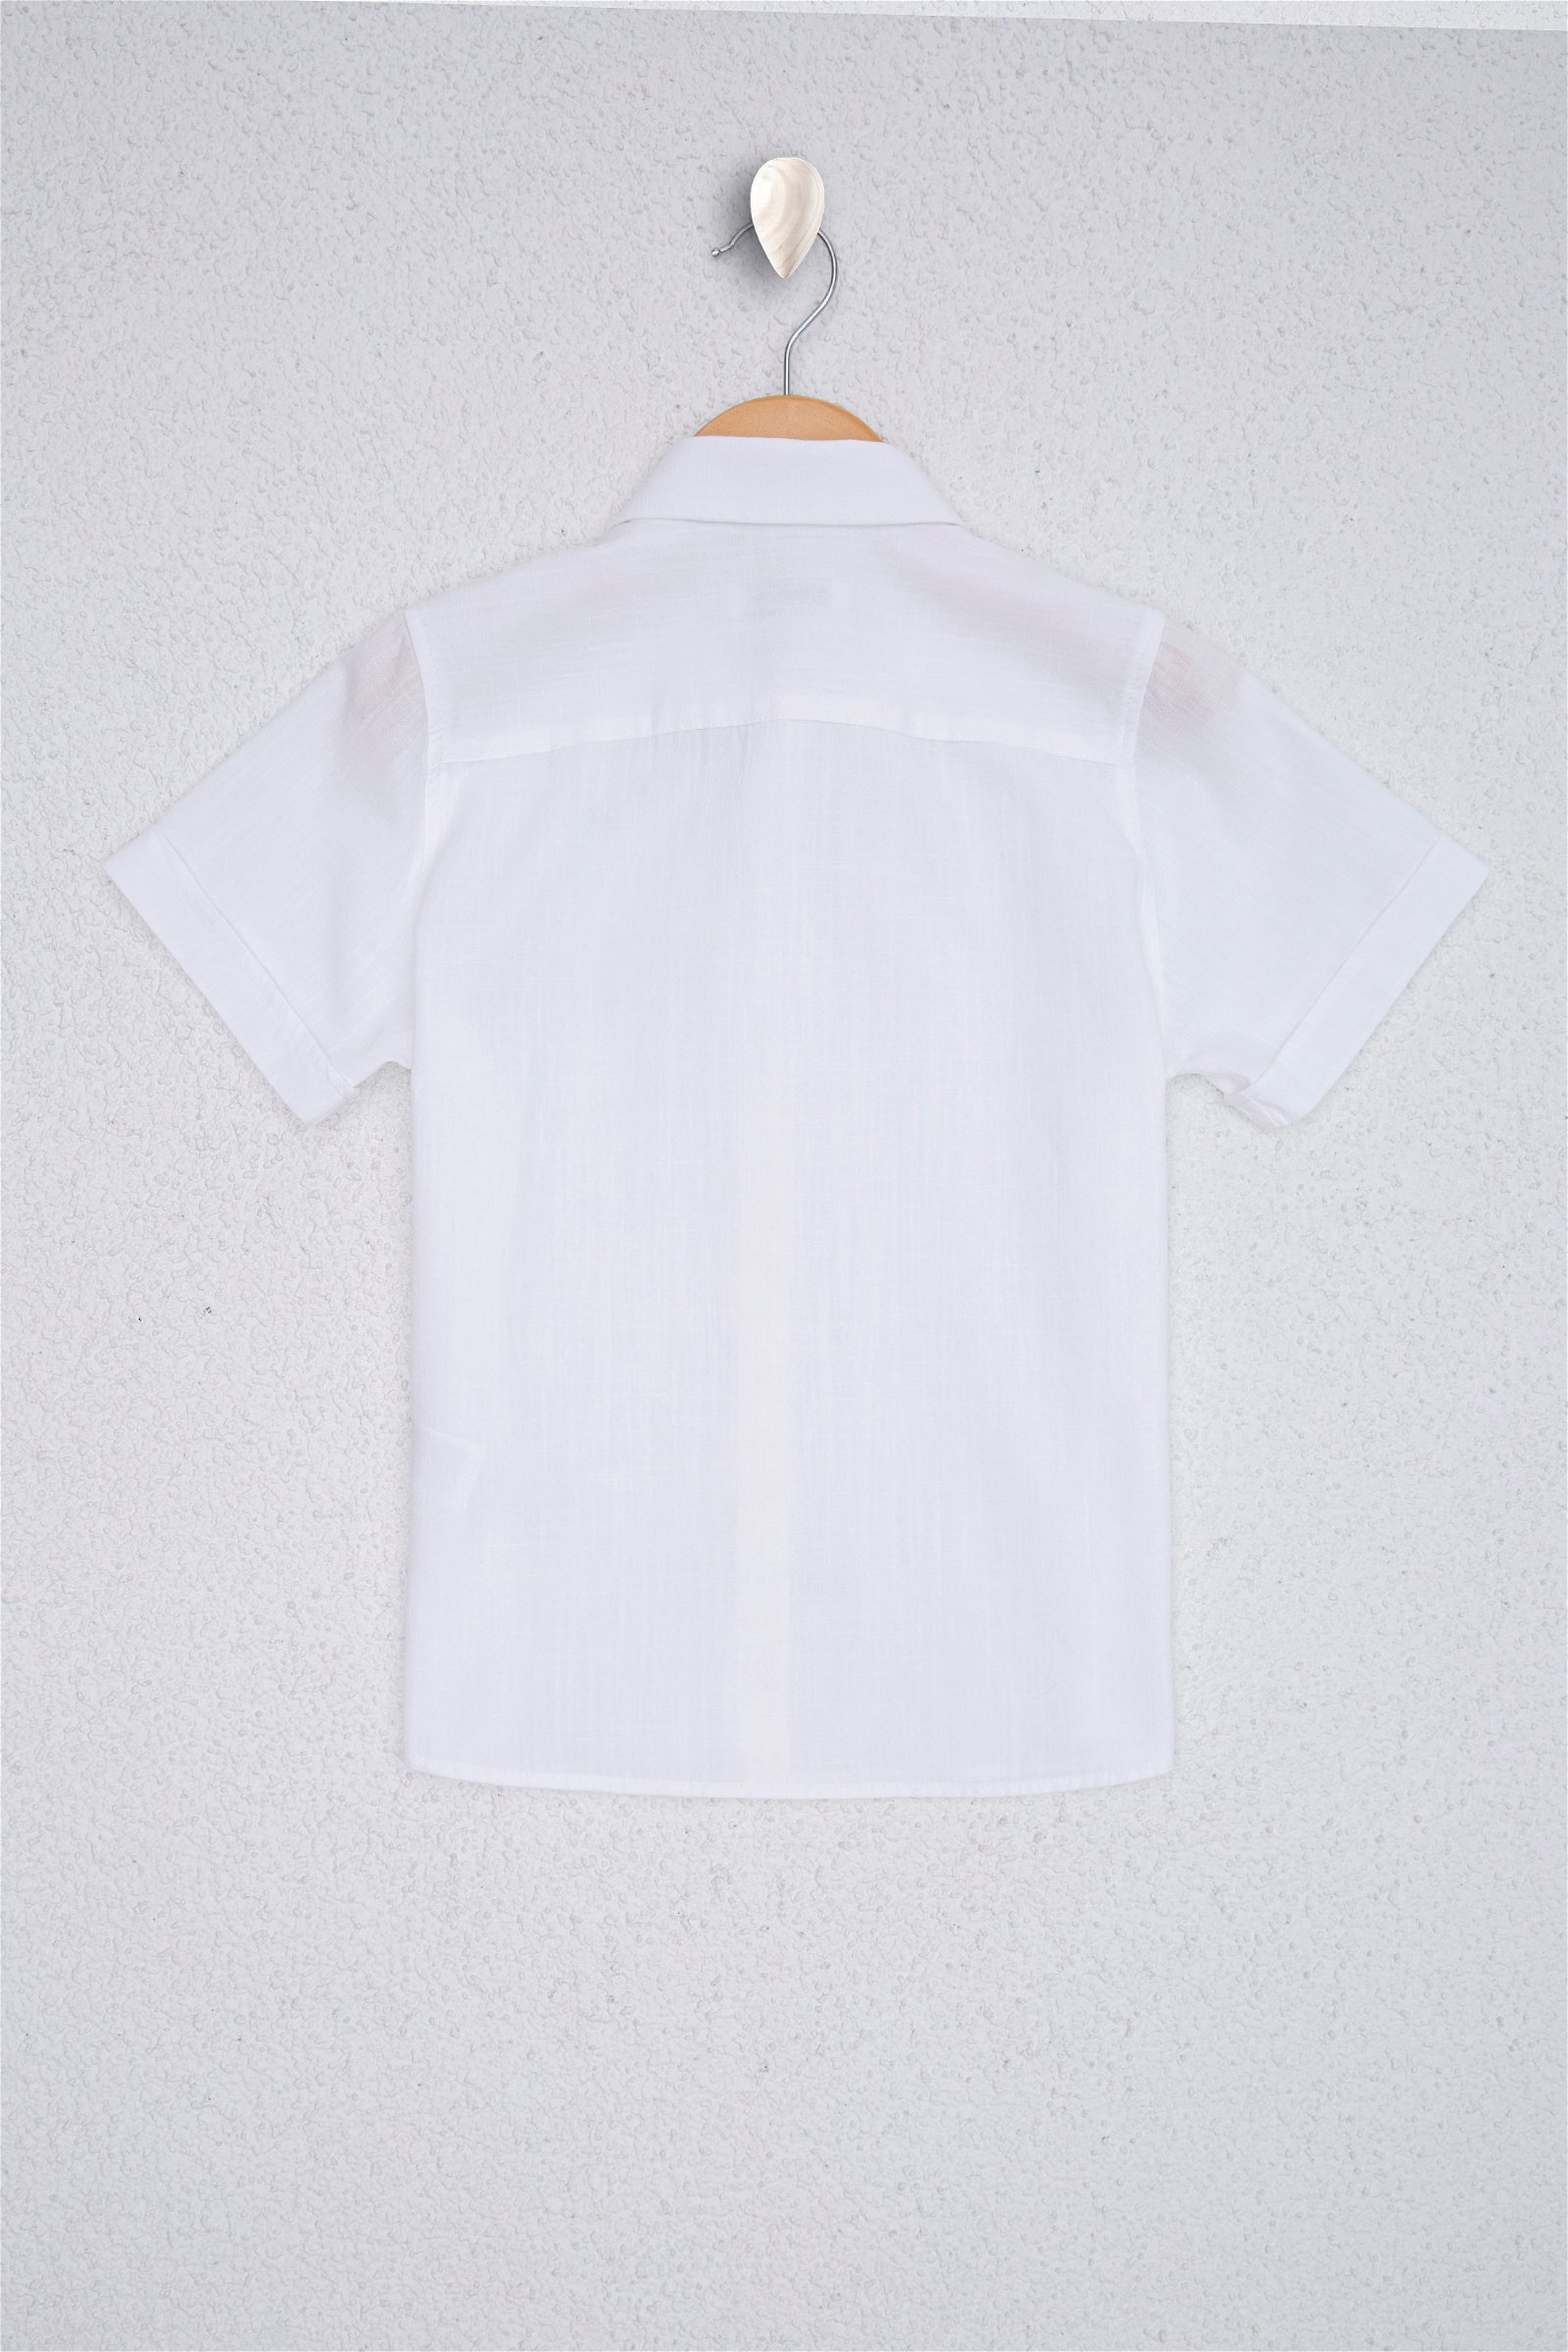 پیراهن  سفید  استاندارد فیت  پسرانه یو اس پولو